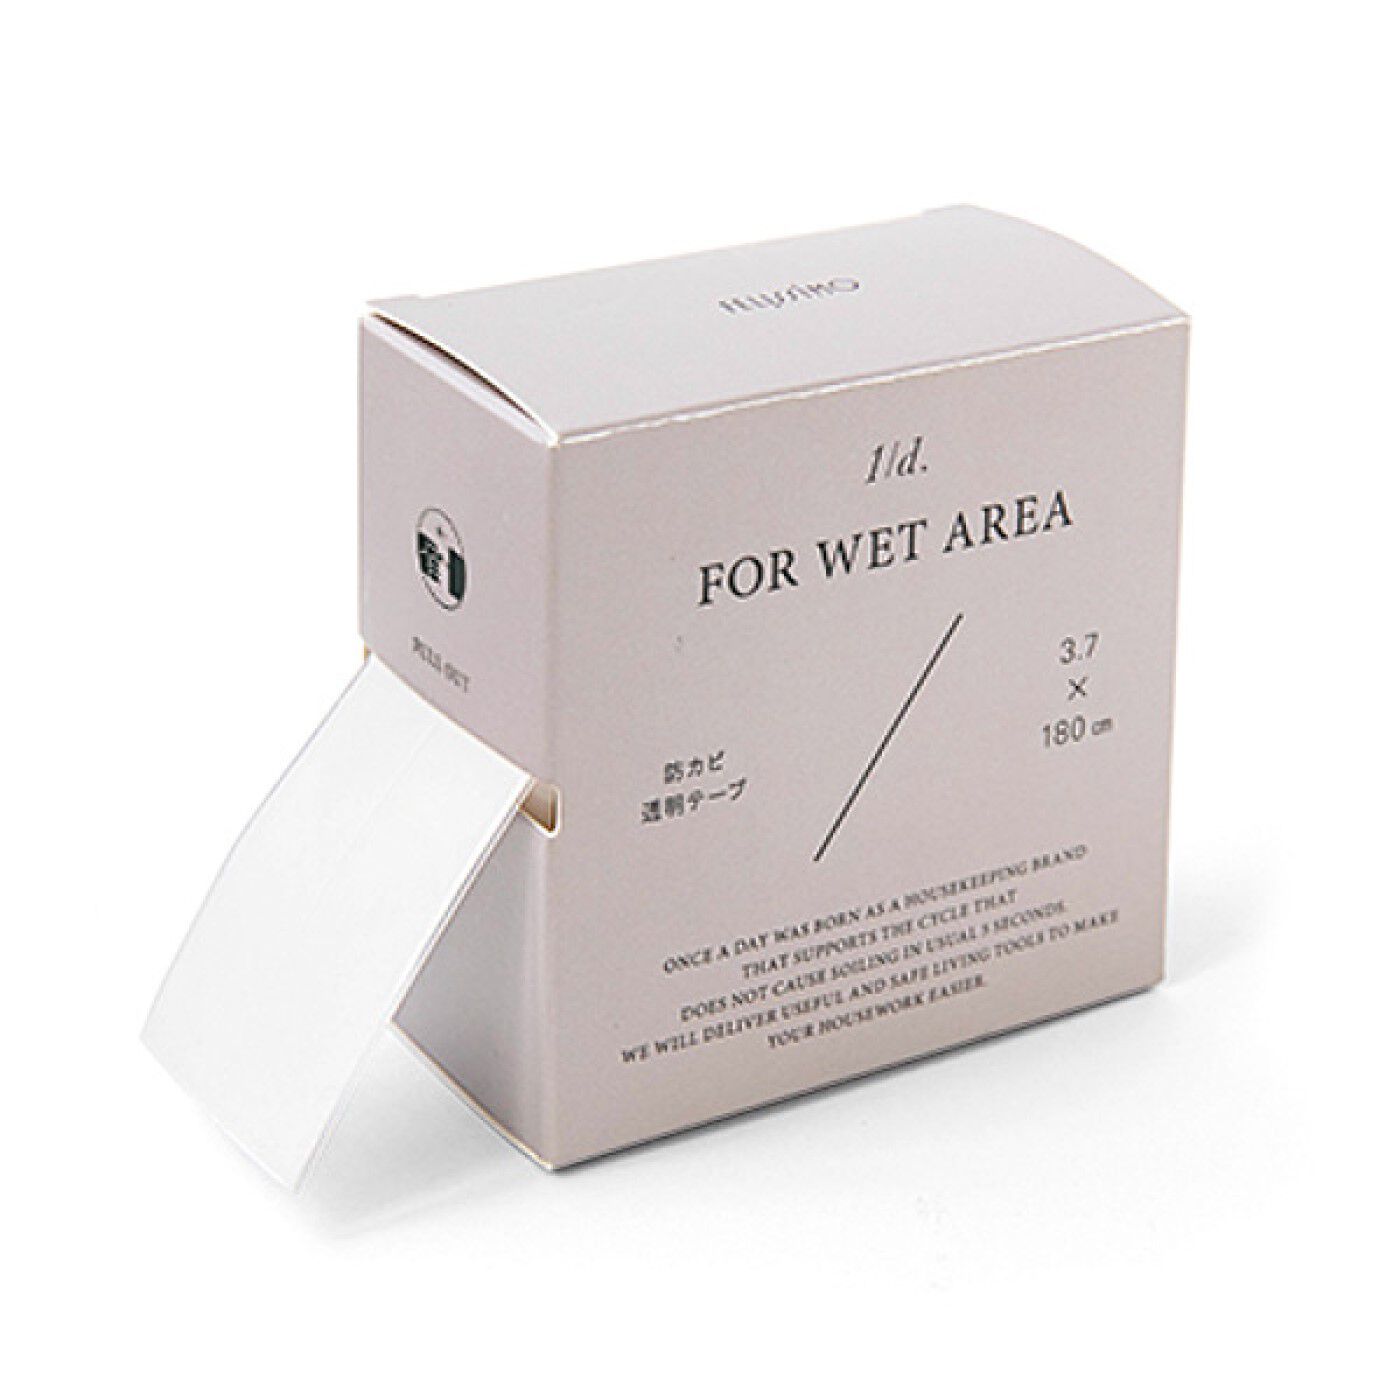 フェリシモの雑貨Kraso|1/d FOR WET AREA 防カビテープの会|カビの繁殖を抑制する防カビ成分を配合しているテープ。